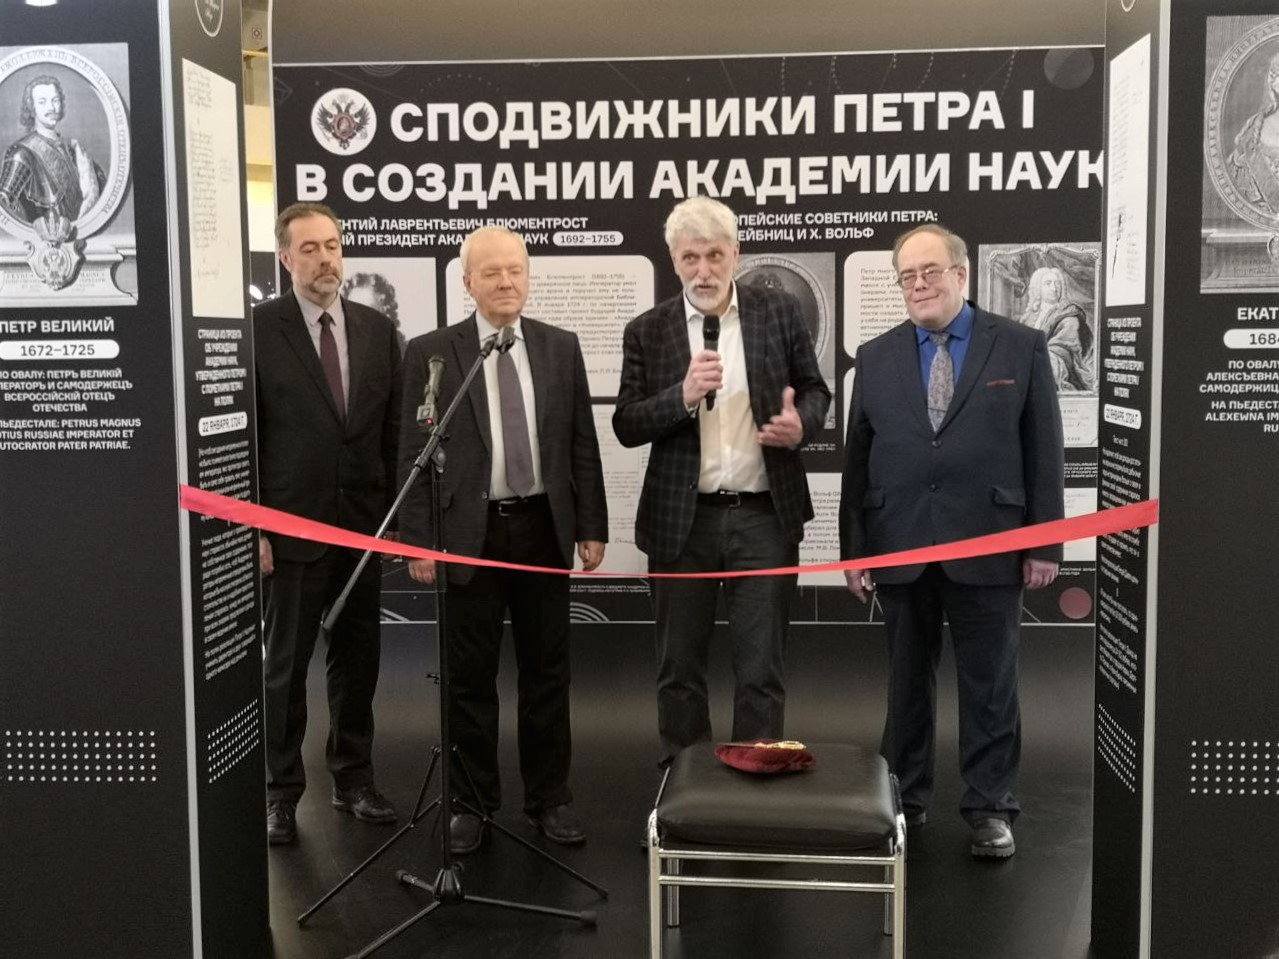 Мультимедийная выставка об истории РАН начинает юбилейный маршрут по стране с Москвы